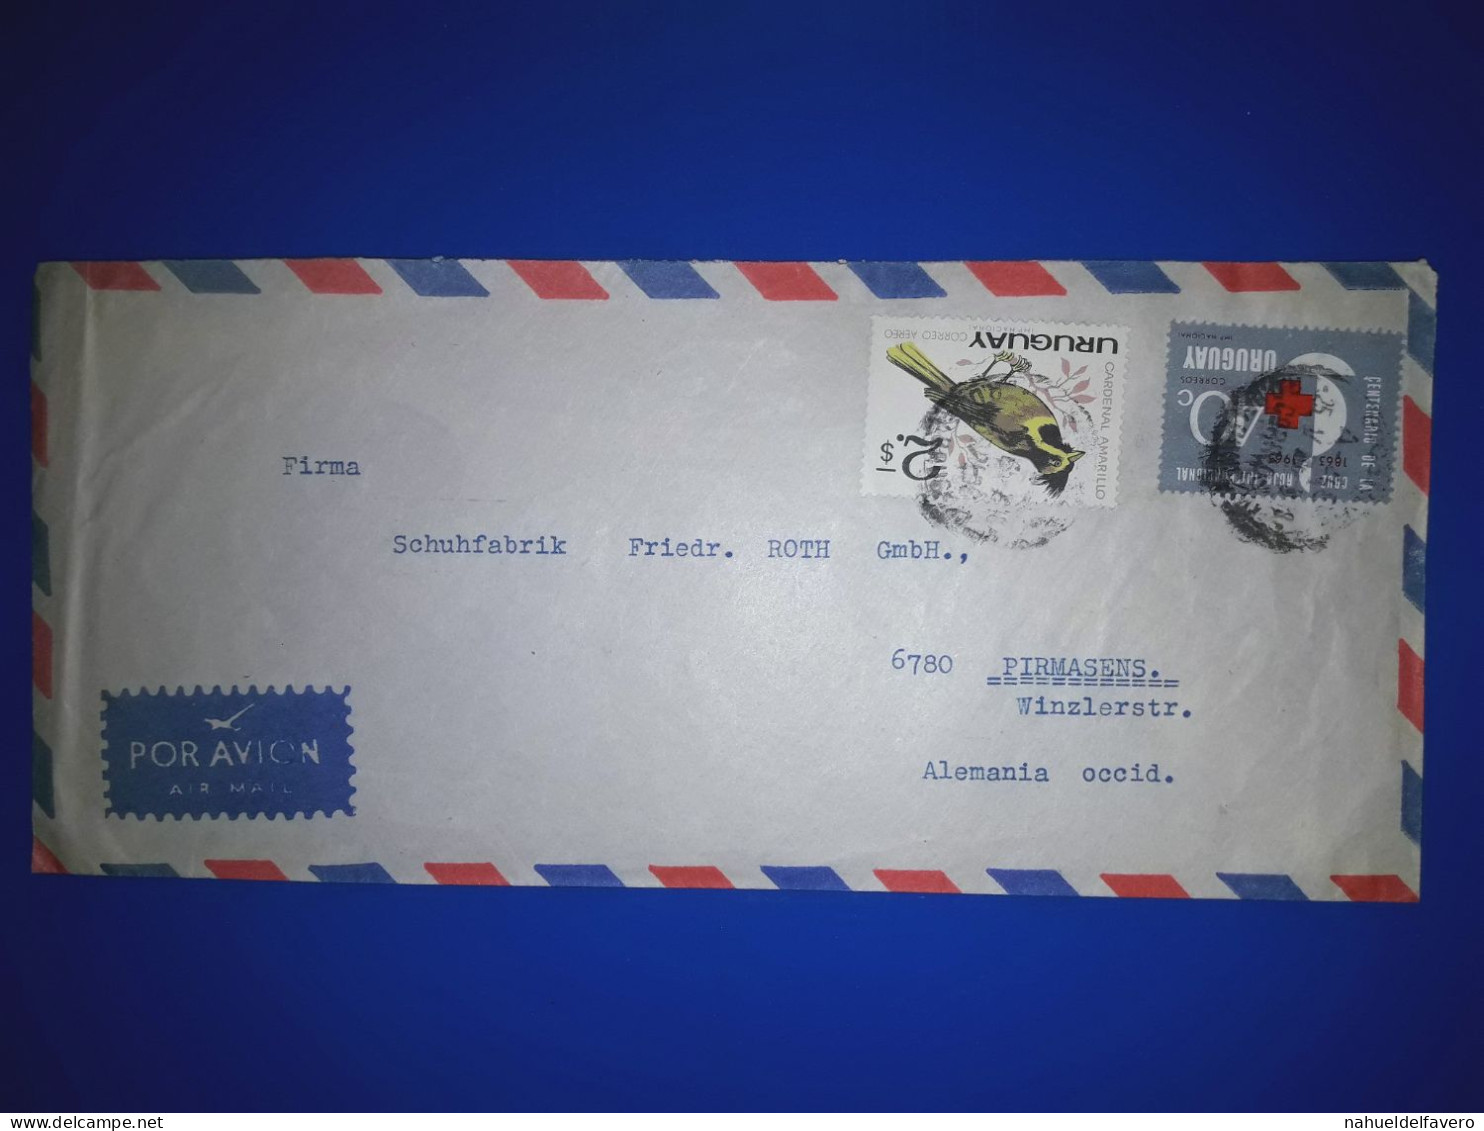 URUGUAY, Enveloppe Aérienne Distribuée En Allemagne De L'Ouest, Avec Une Variété De Timbres-poste. Année 1963. - Uruguay